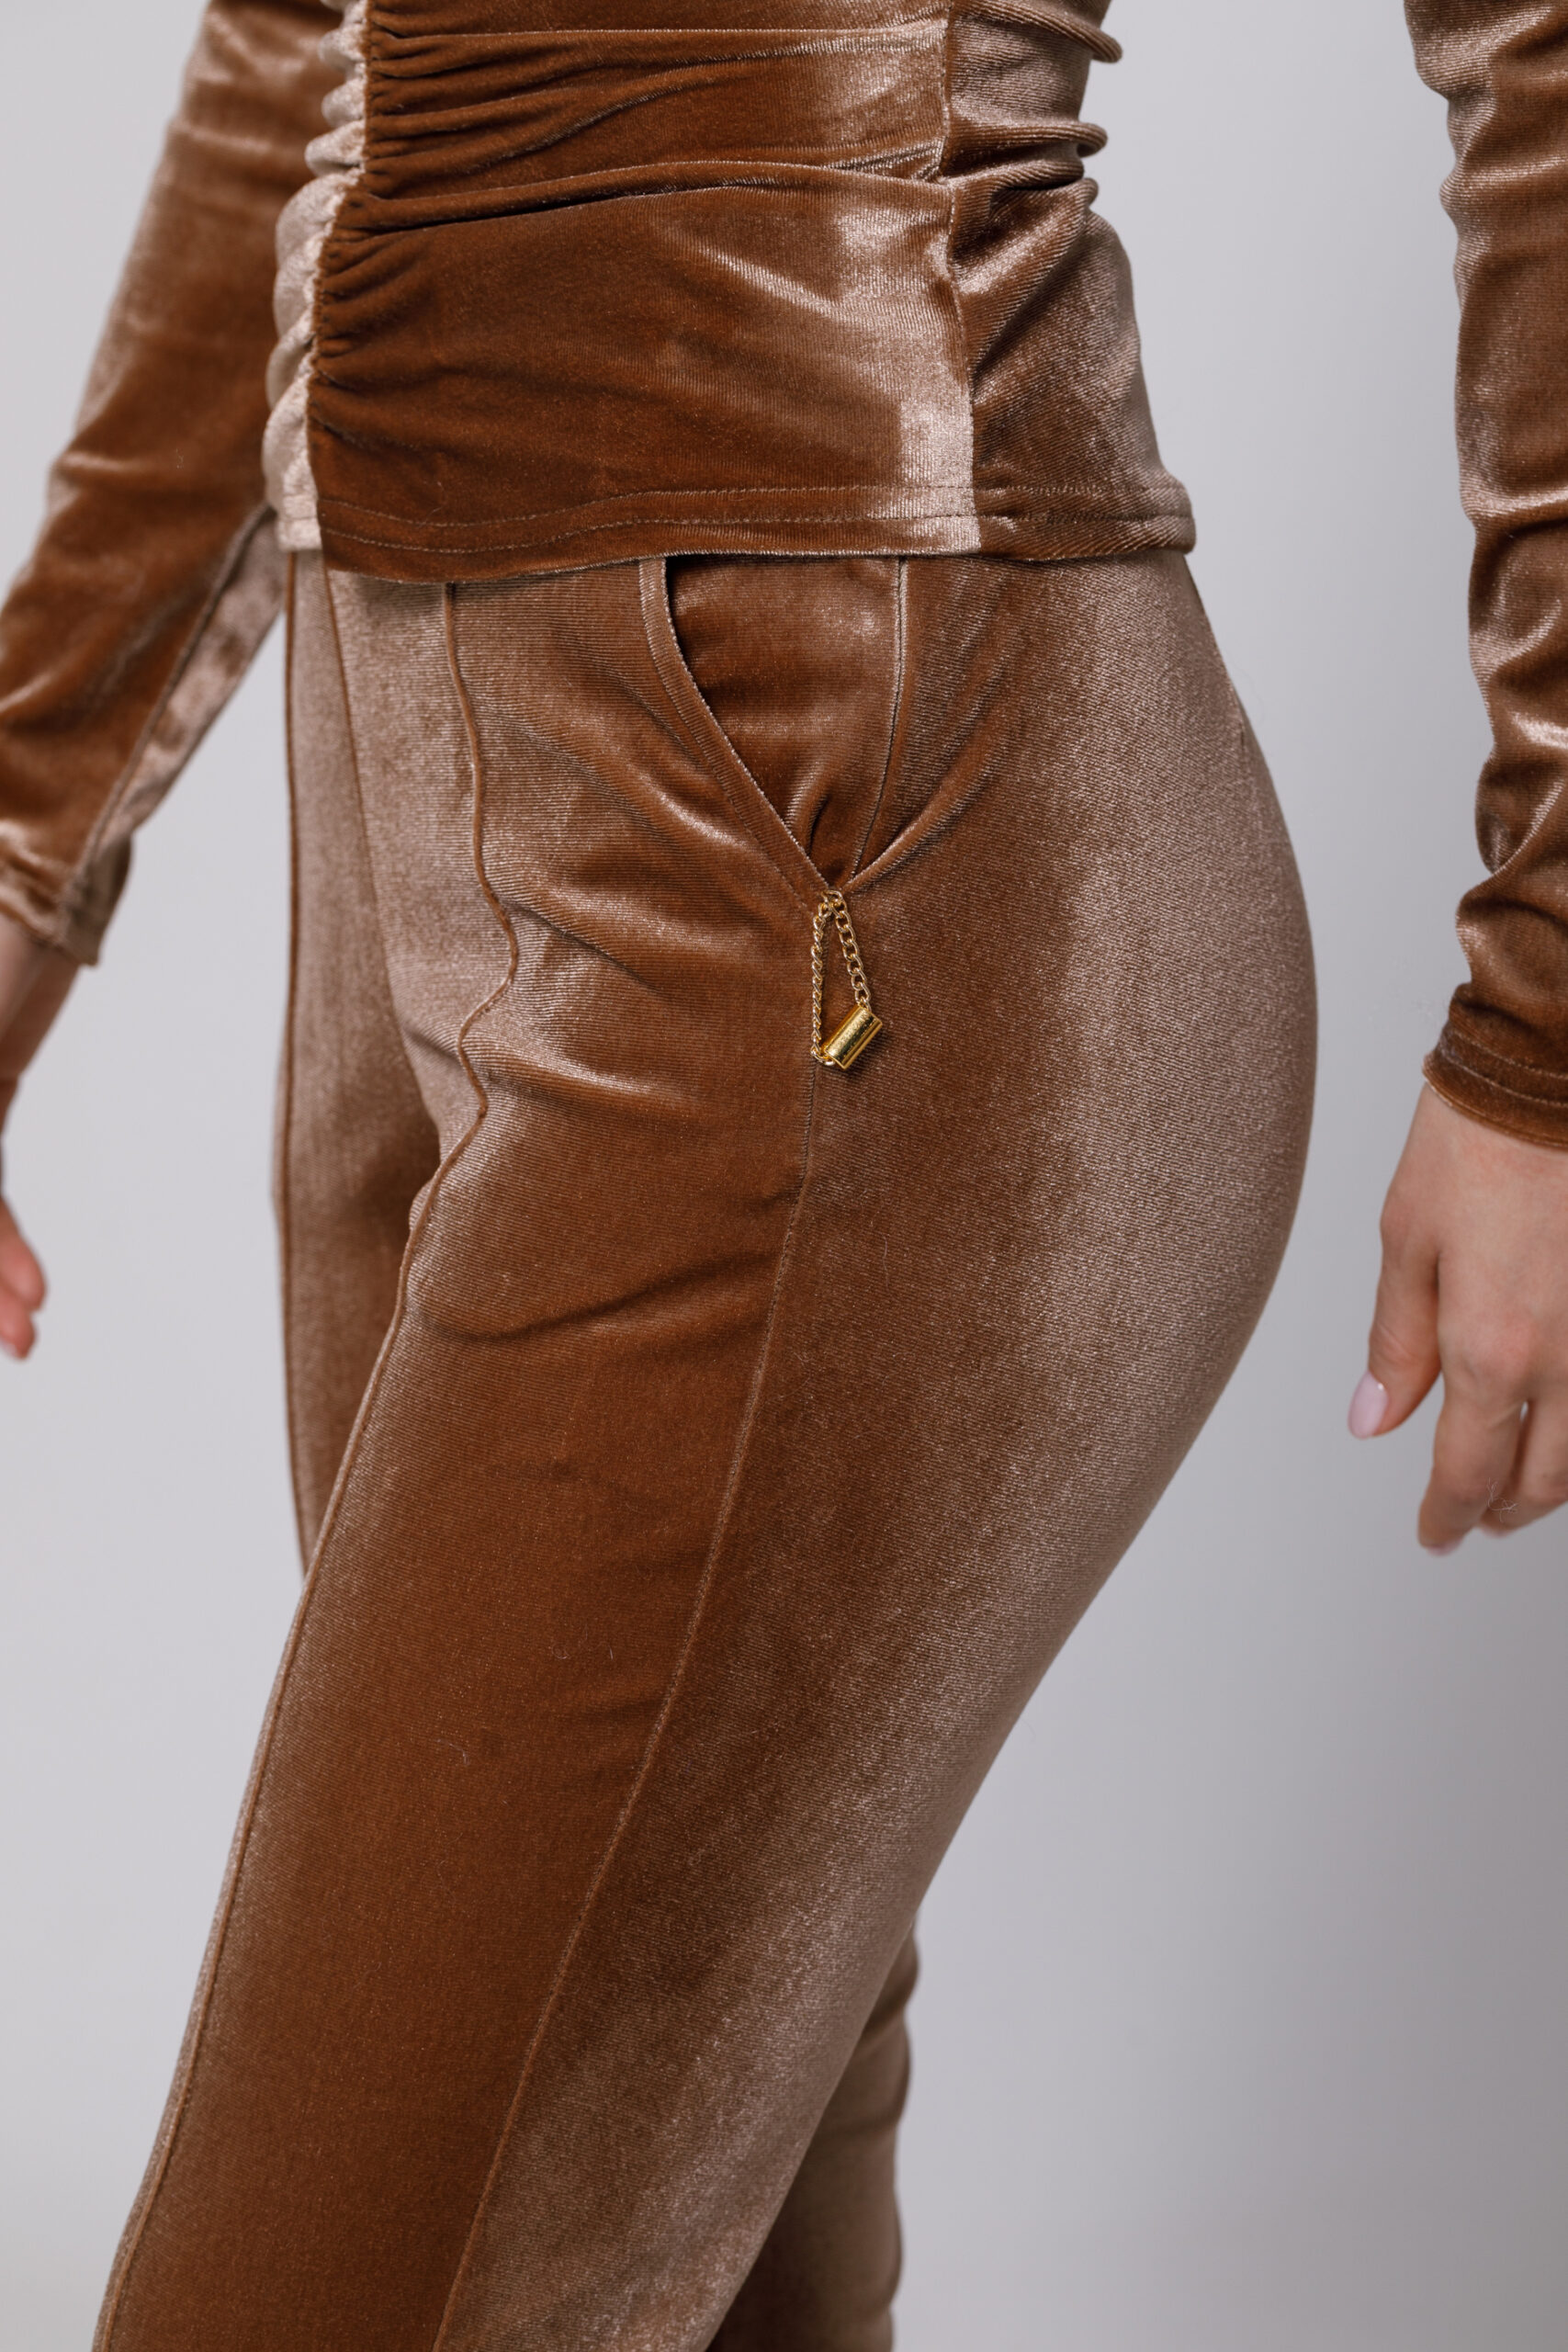 Pantalon SAM din catifea cappuccino. Materiale naturale, design unicat, cu broderie si aplicatii handmade